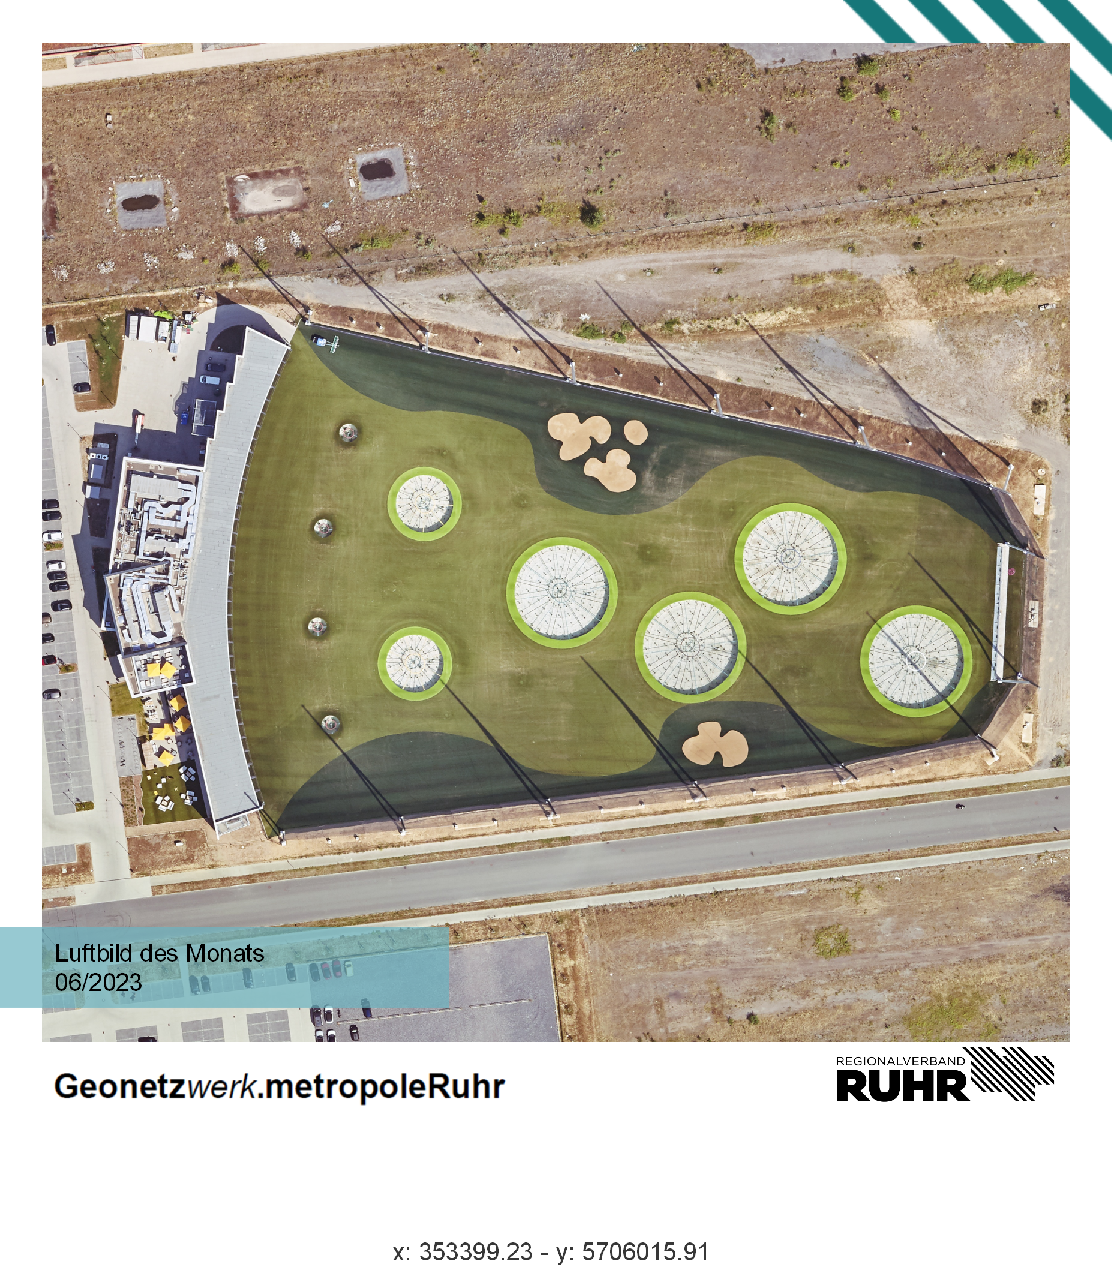 Luftbild des Monats Juni 2023 mit dem Topgolf-Gelände in Oberhausen. 